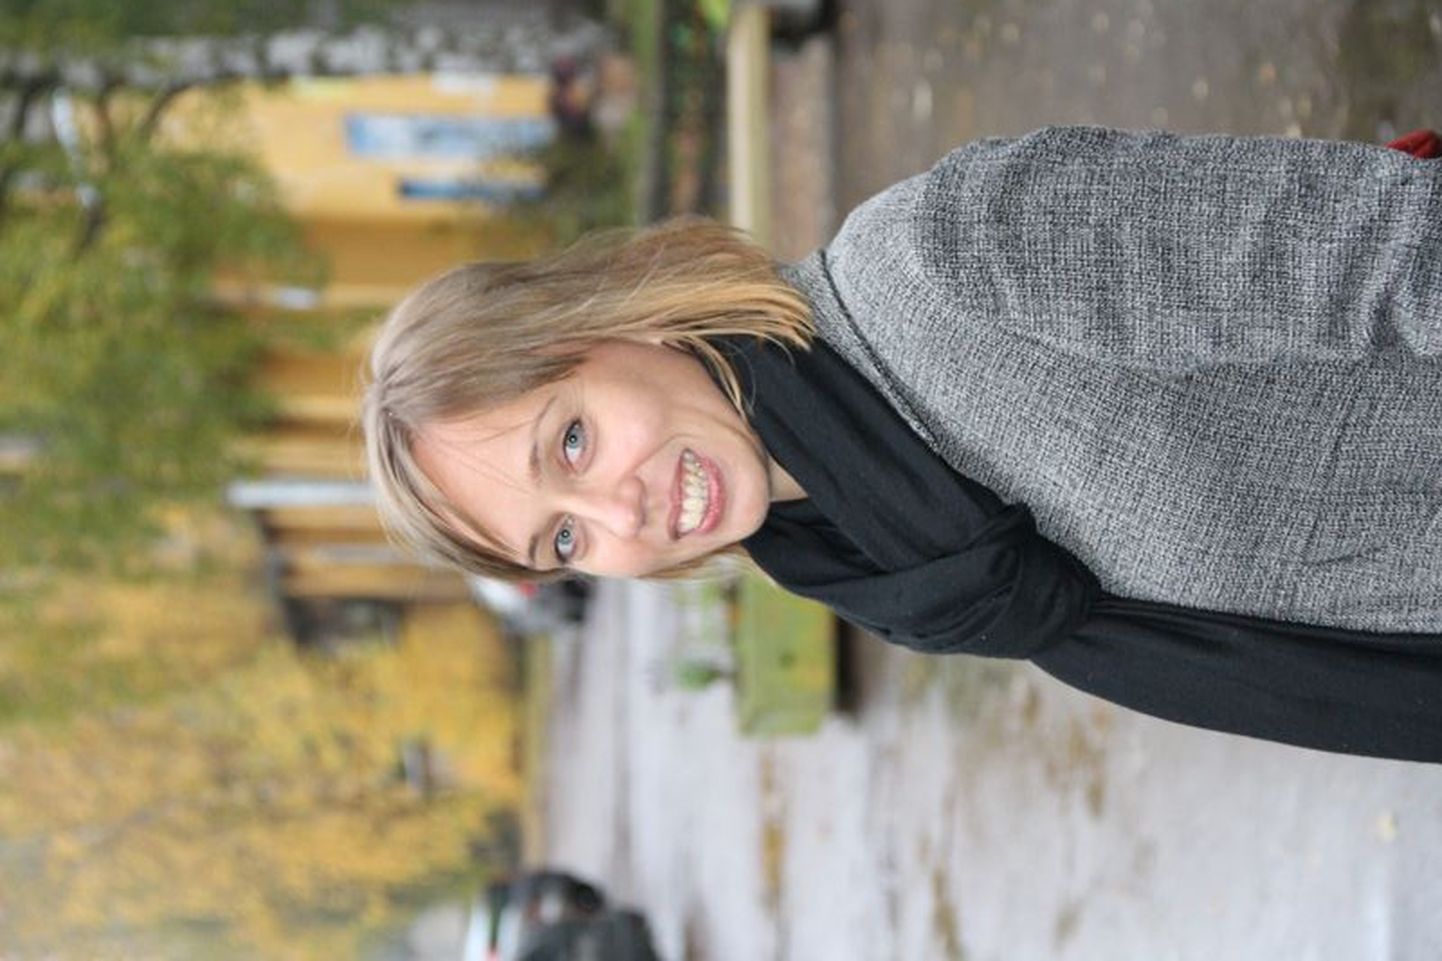 Susanna Poikela on üks Eesti esindajaid Eesti, Soome ja Läti vahelises koostööprogrammis Leonardo da Vinci, mille eesmärgiks on ühildada kosmeetikute õppekavasid, õppematerjali ja tööpraktika normistikku.